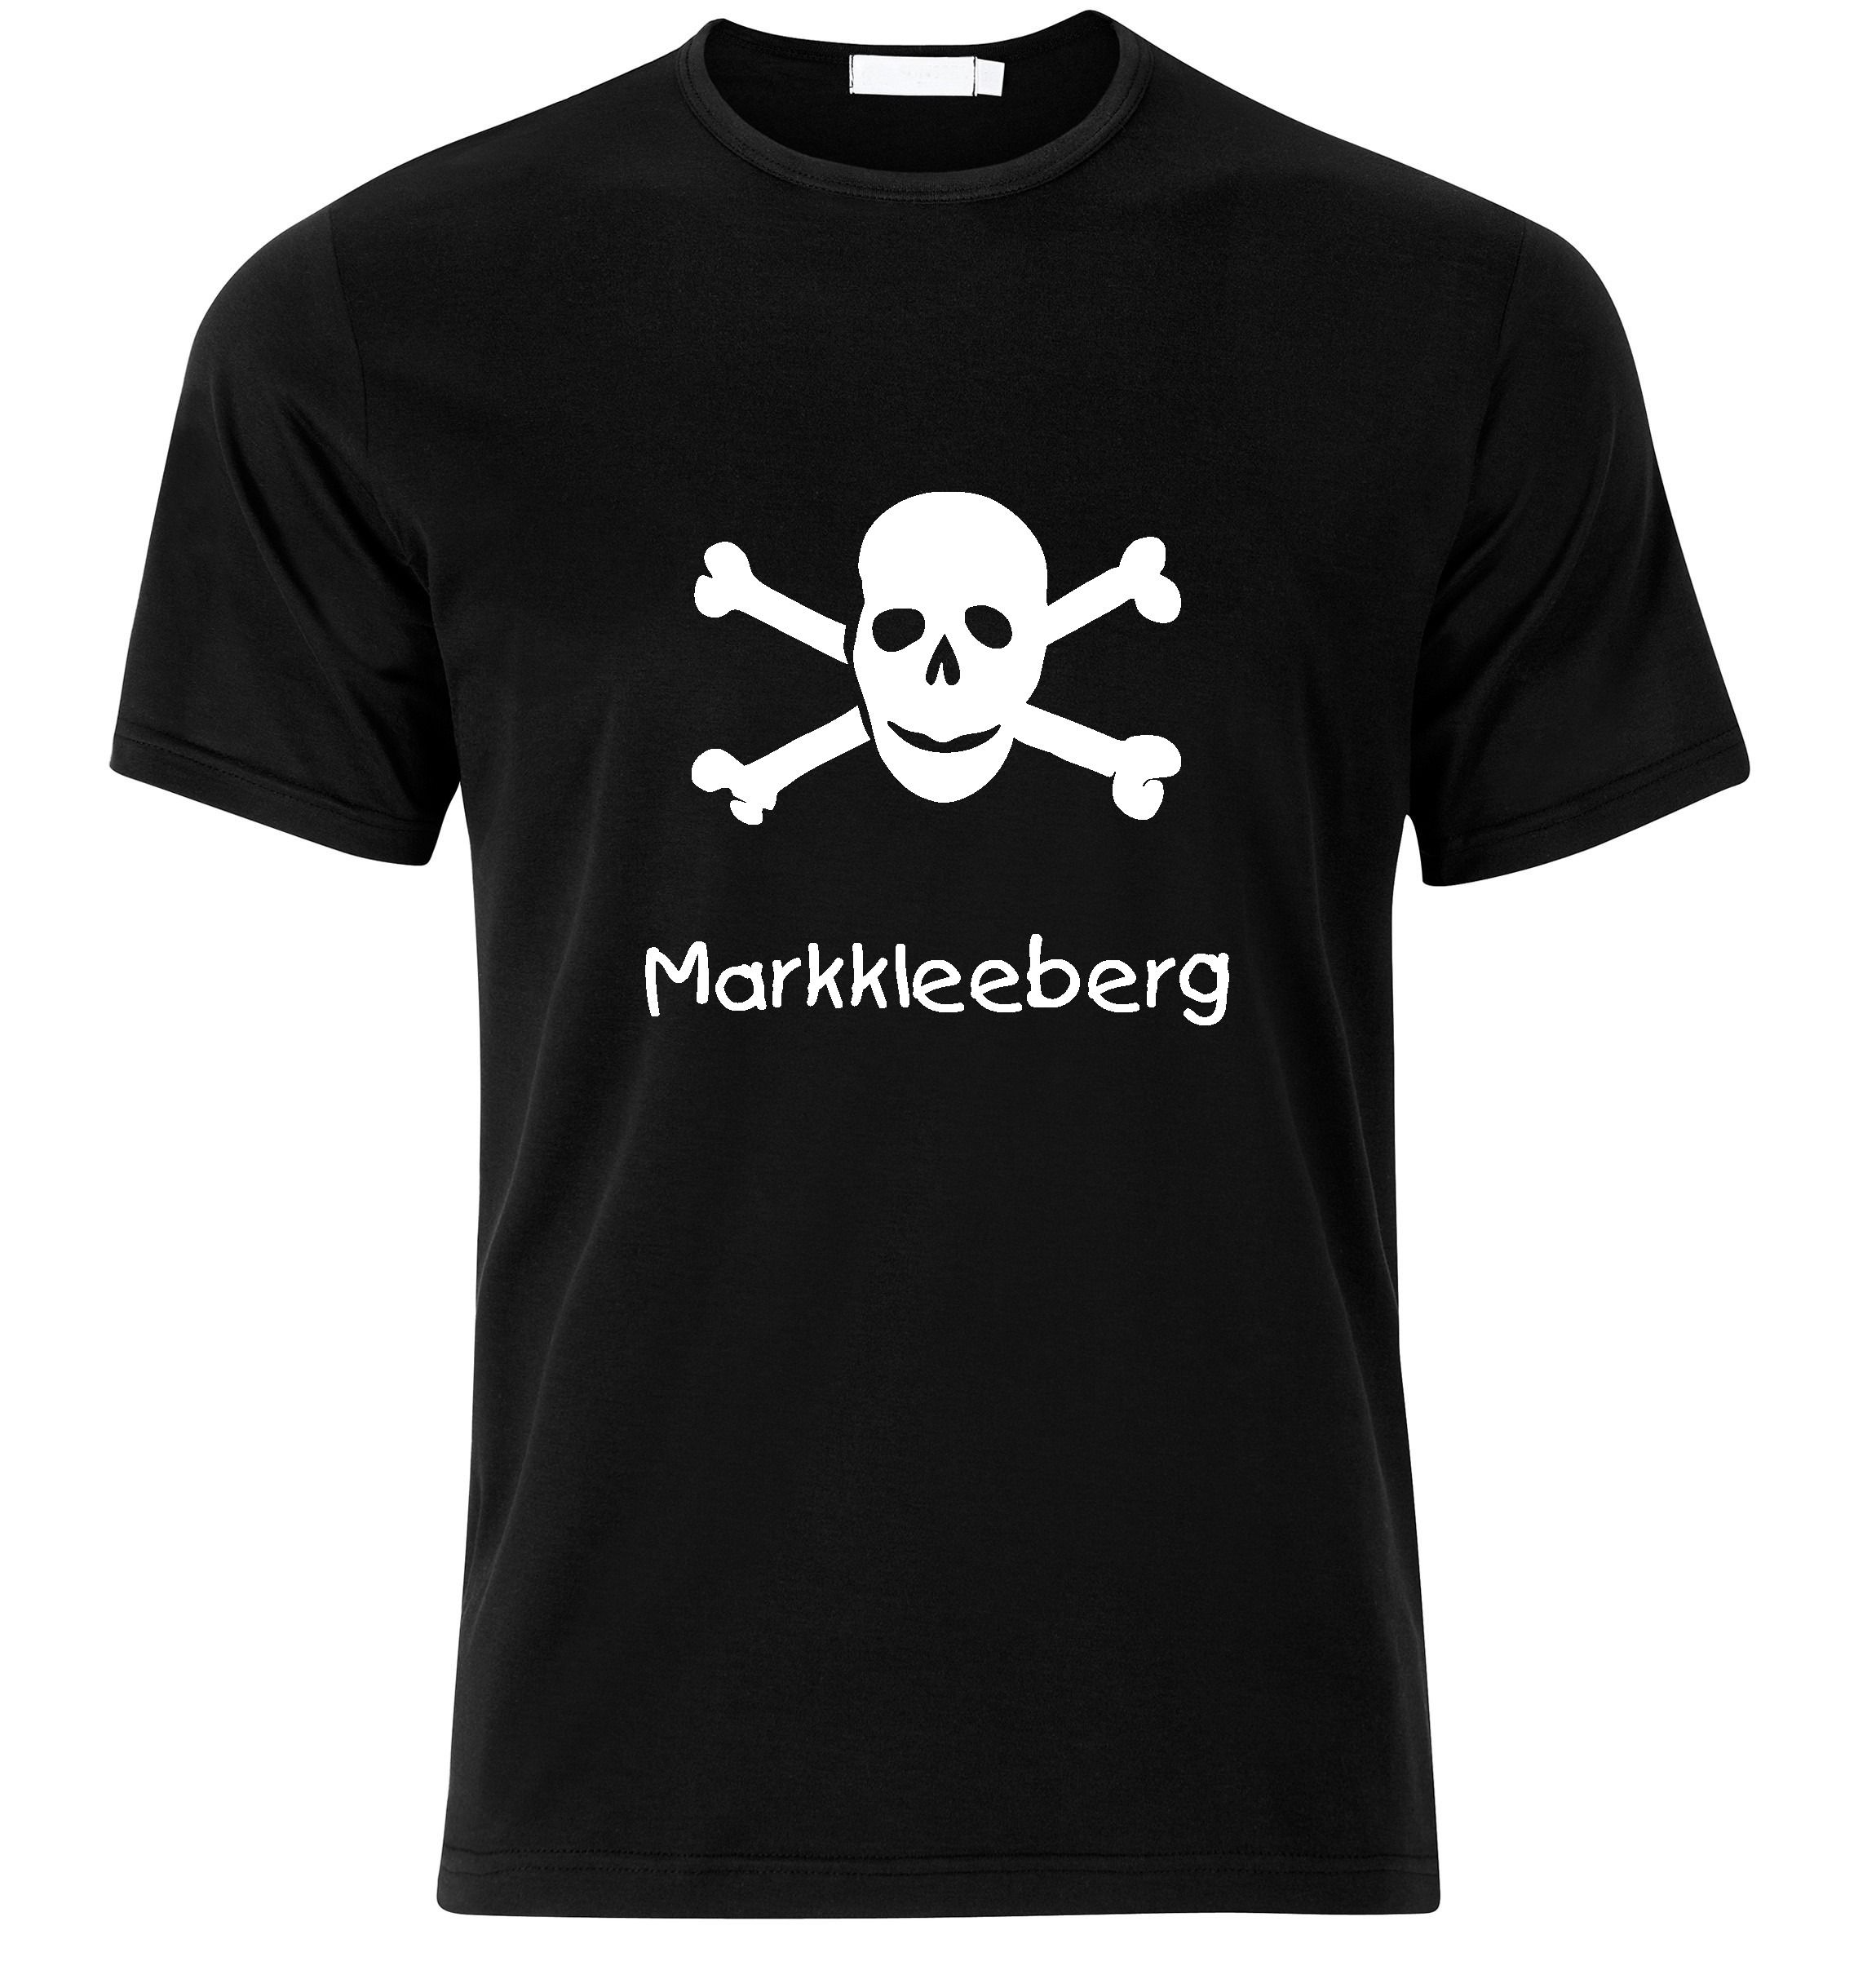 T-Shirt Markkleeberg Jolly Roger, Totenkopf